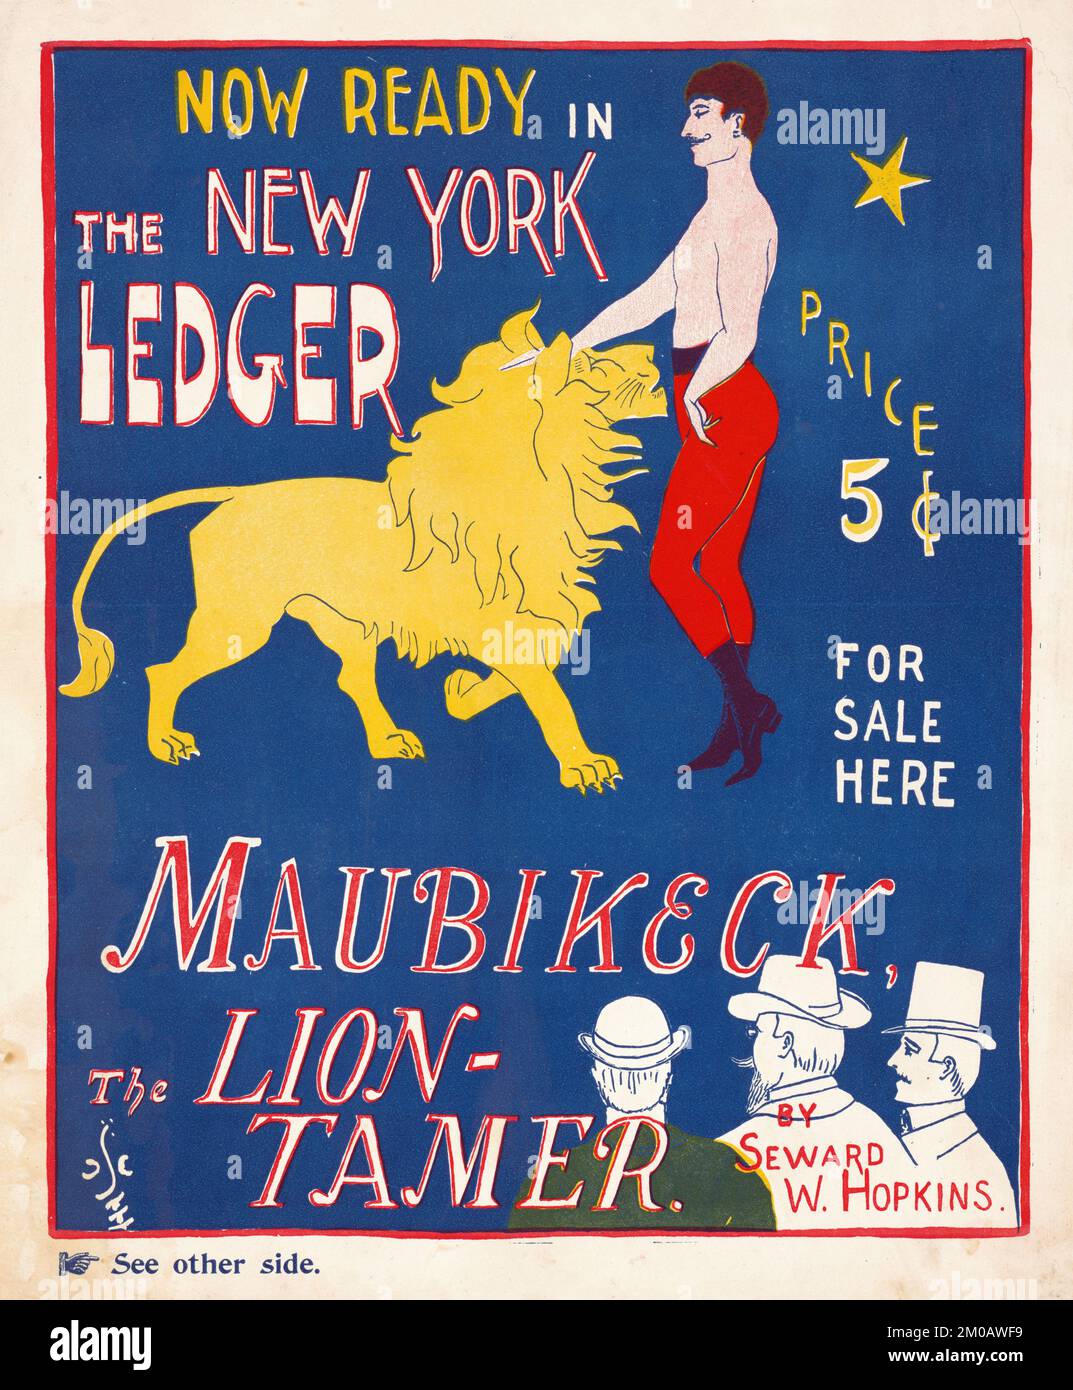 Maubikeck, le tamer de Seward W. Hopkins. Maintenant prêt dans le Grand Livre de New York - Scotson-Clark, G. F. (George Frederick), 1872-1927, artiste - 1890 Banque D'Images